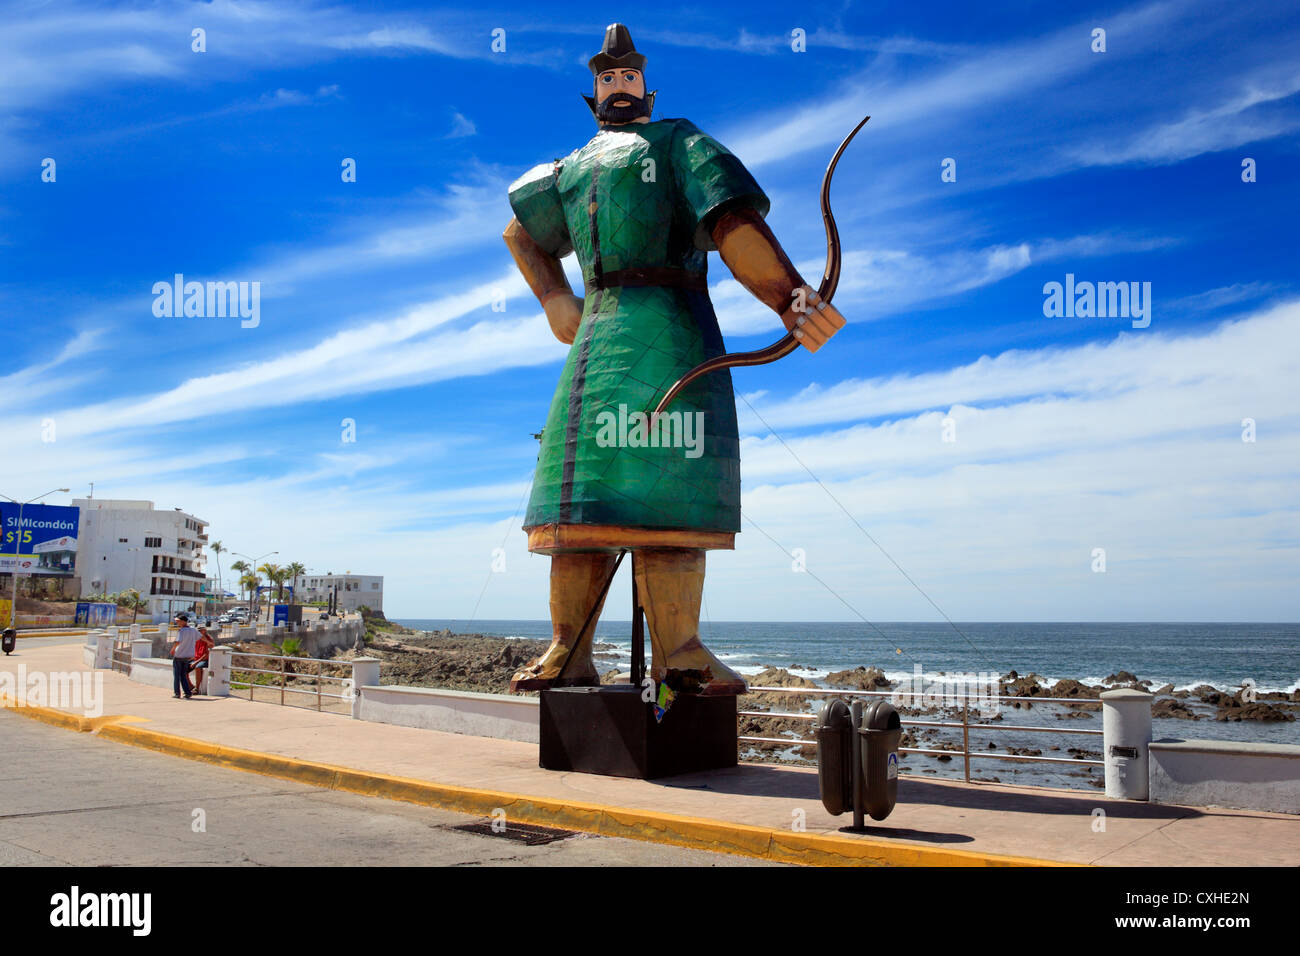 Carnival sculpture, Mazatlan, Sinaloa, Mexico Stock Photo